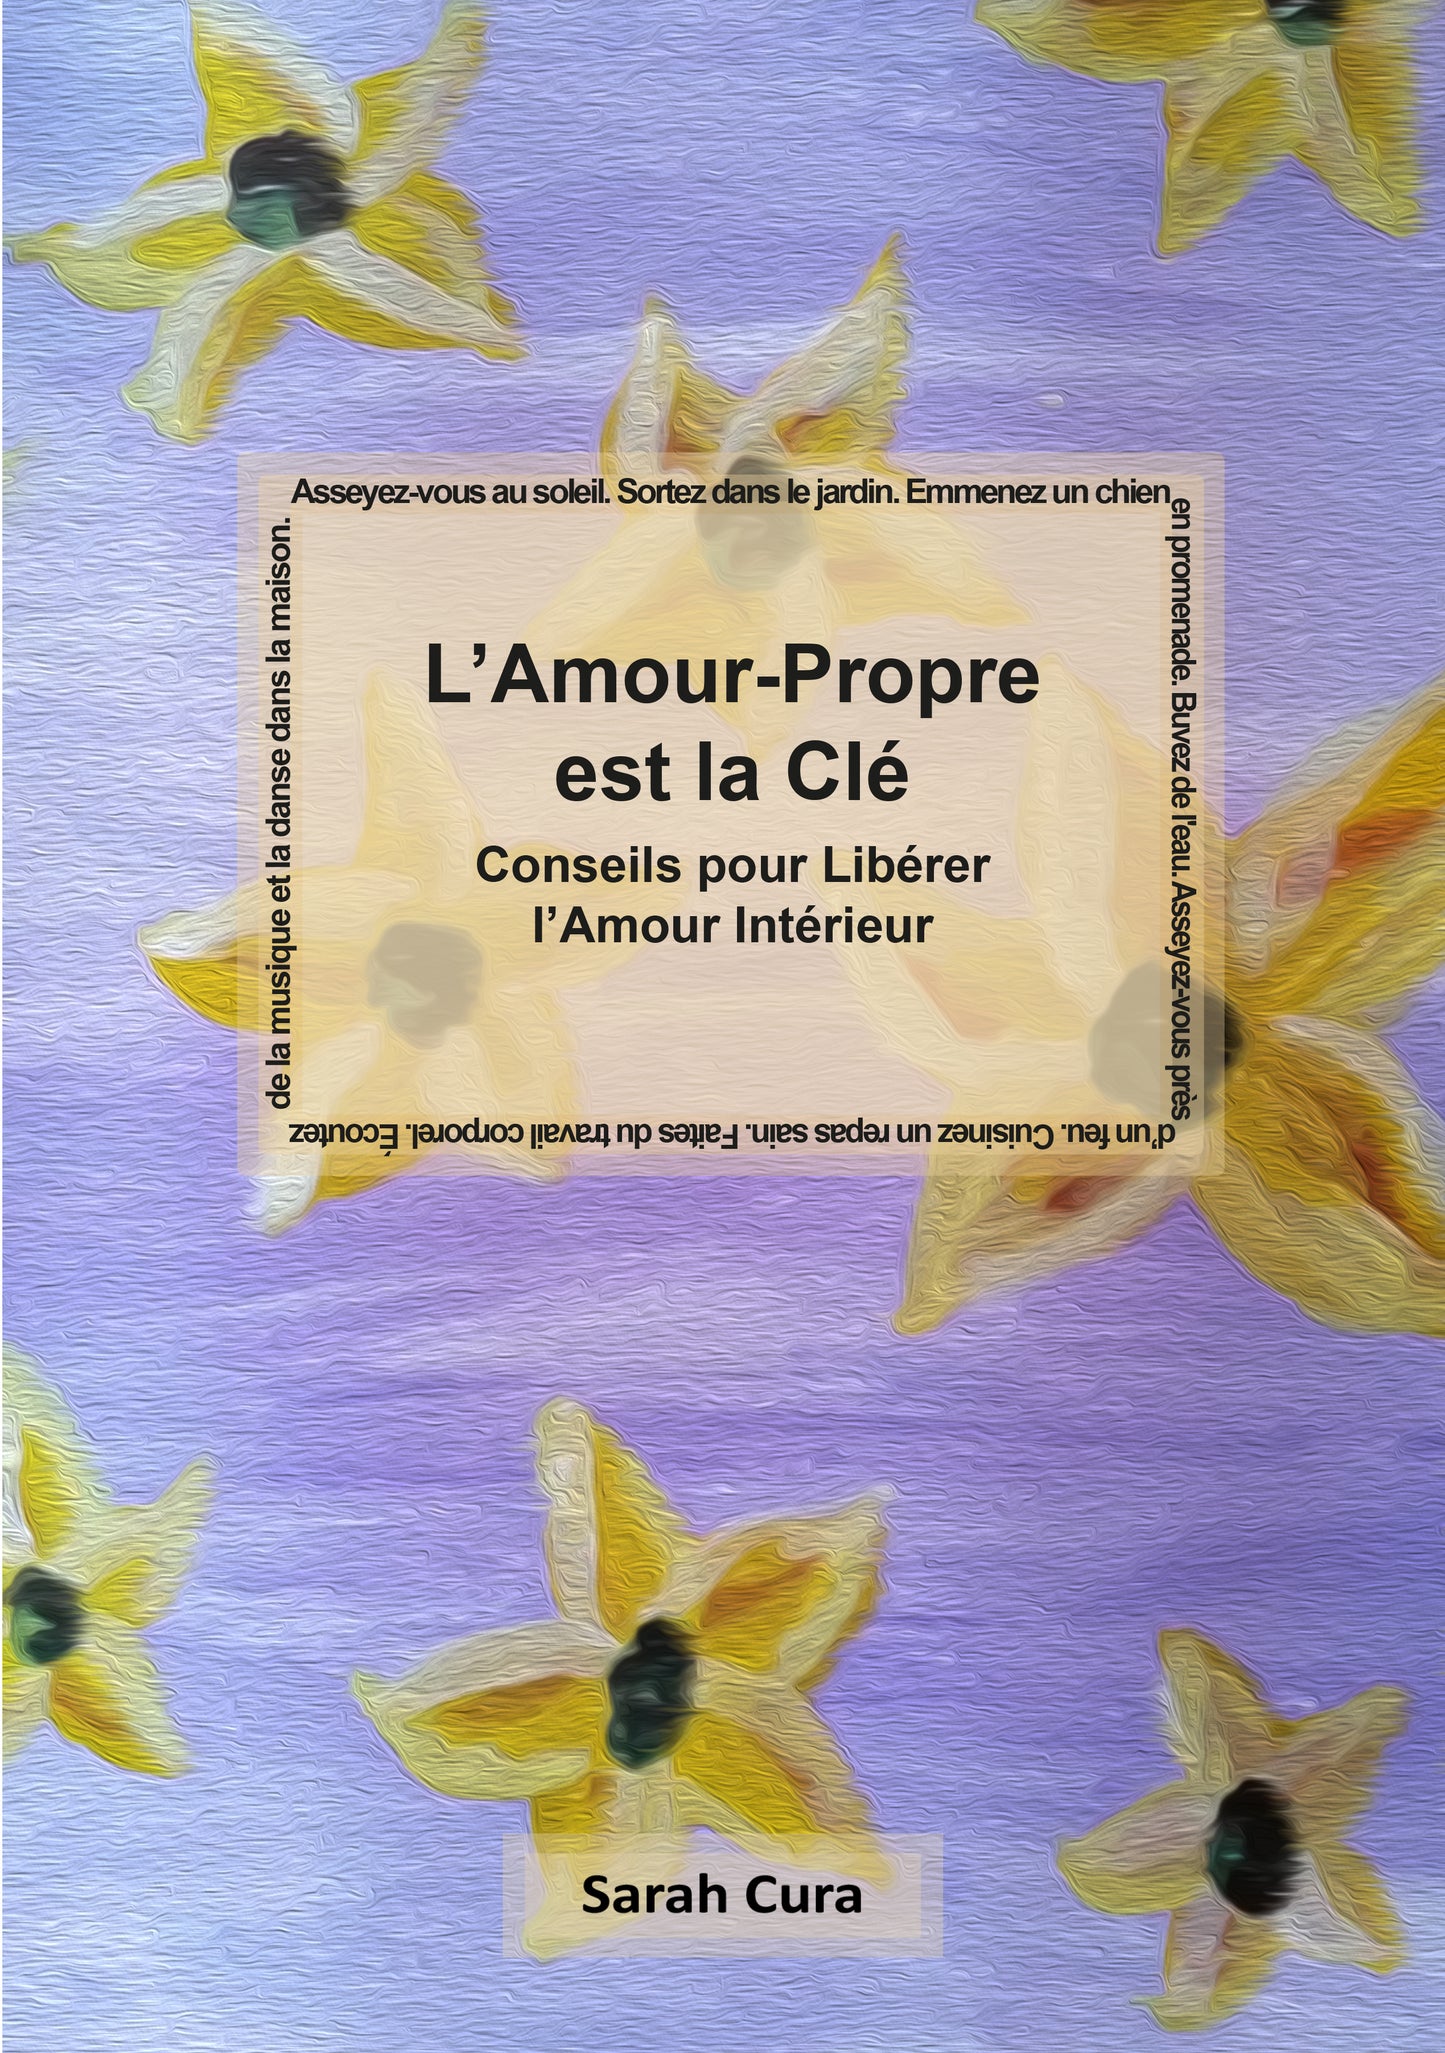 L’Amour-Propre est la Clé - Conseils pour Libérer l’Amour Intérieur *French eBook